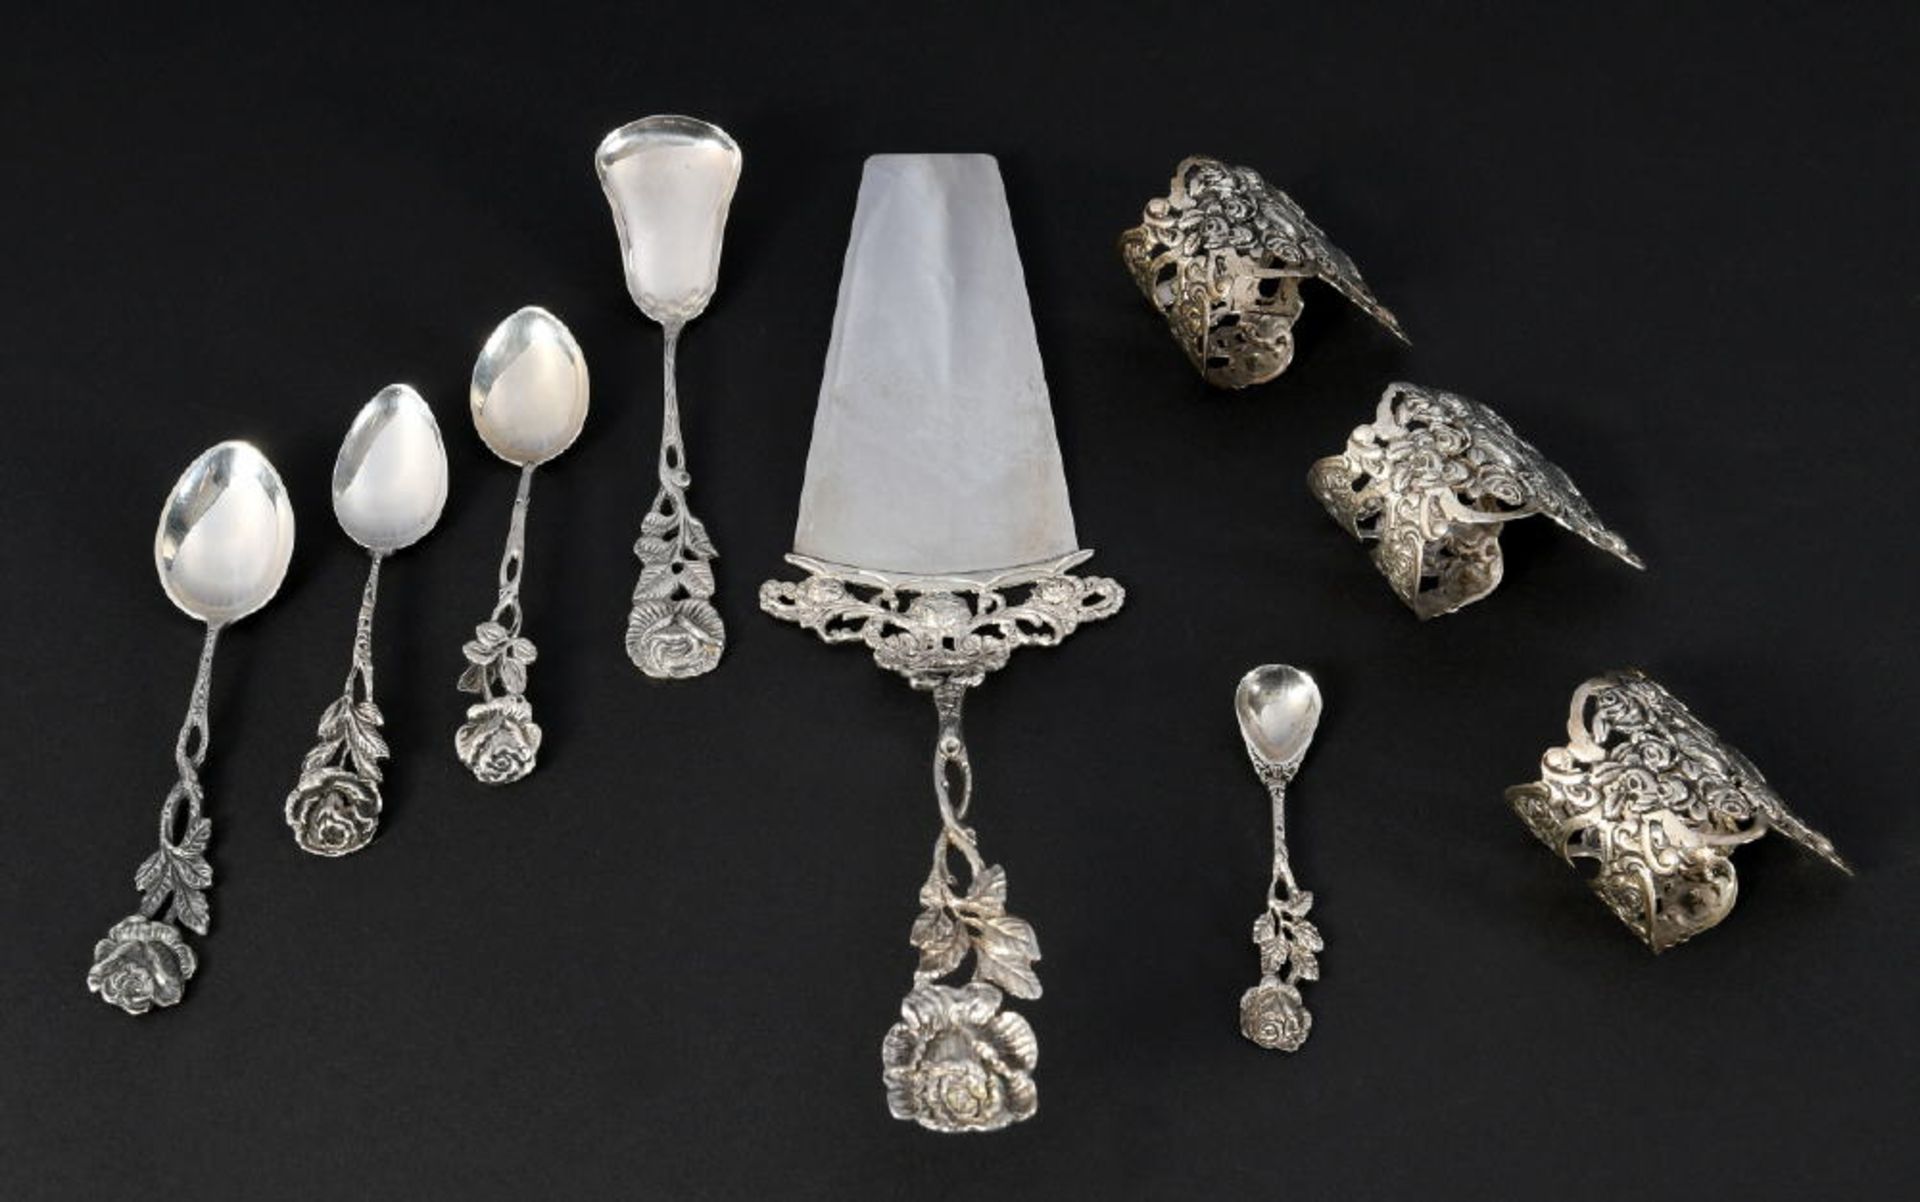 Silberteile, 9 Stück800/835 Silber, 131 g, Dekor "Hildesheimer Rose", 5 Löffel, 3 Serviettenringe, 1